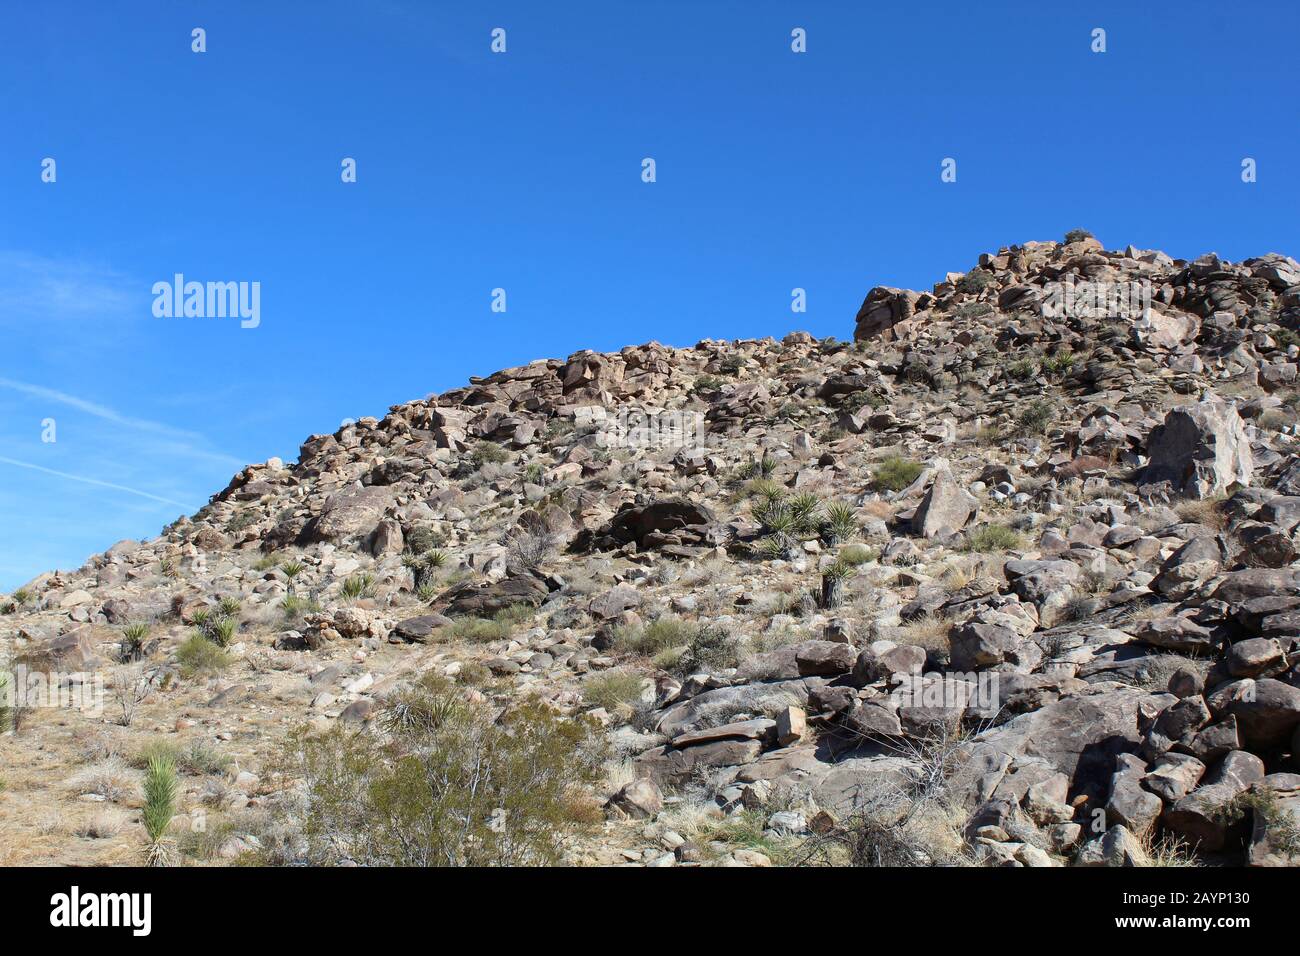 Les collines dans le désert de Mojave du sud créent des différences dans la composition géographique, la biodiversité reproductrice pour les communautés végétales indigènes dans le PN de Joshua Tree. Banque D'Images